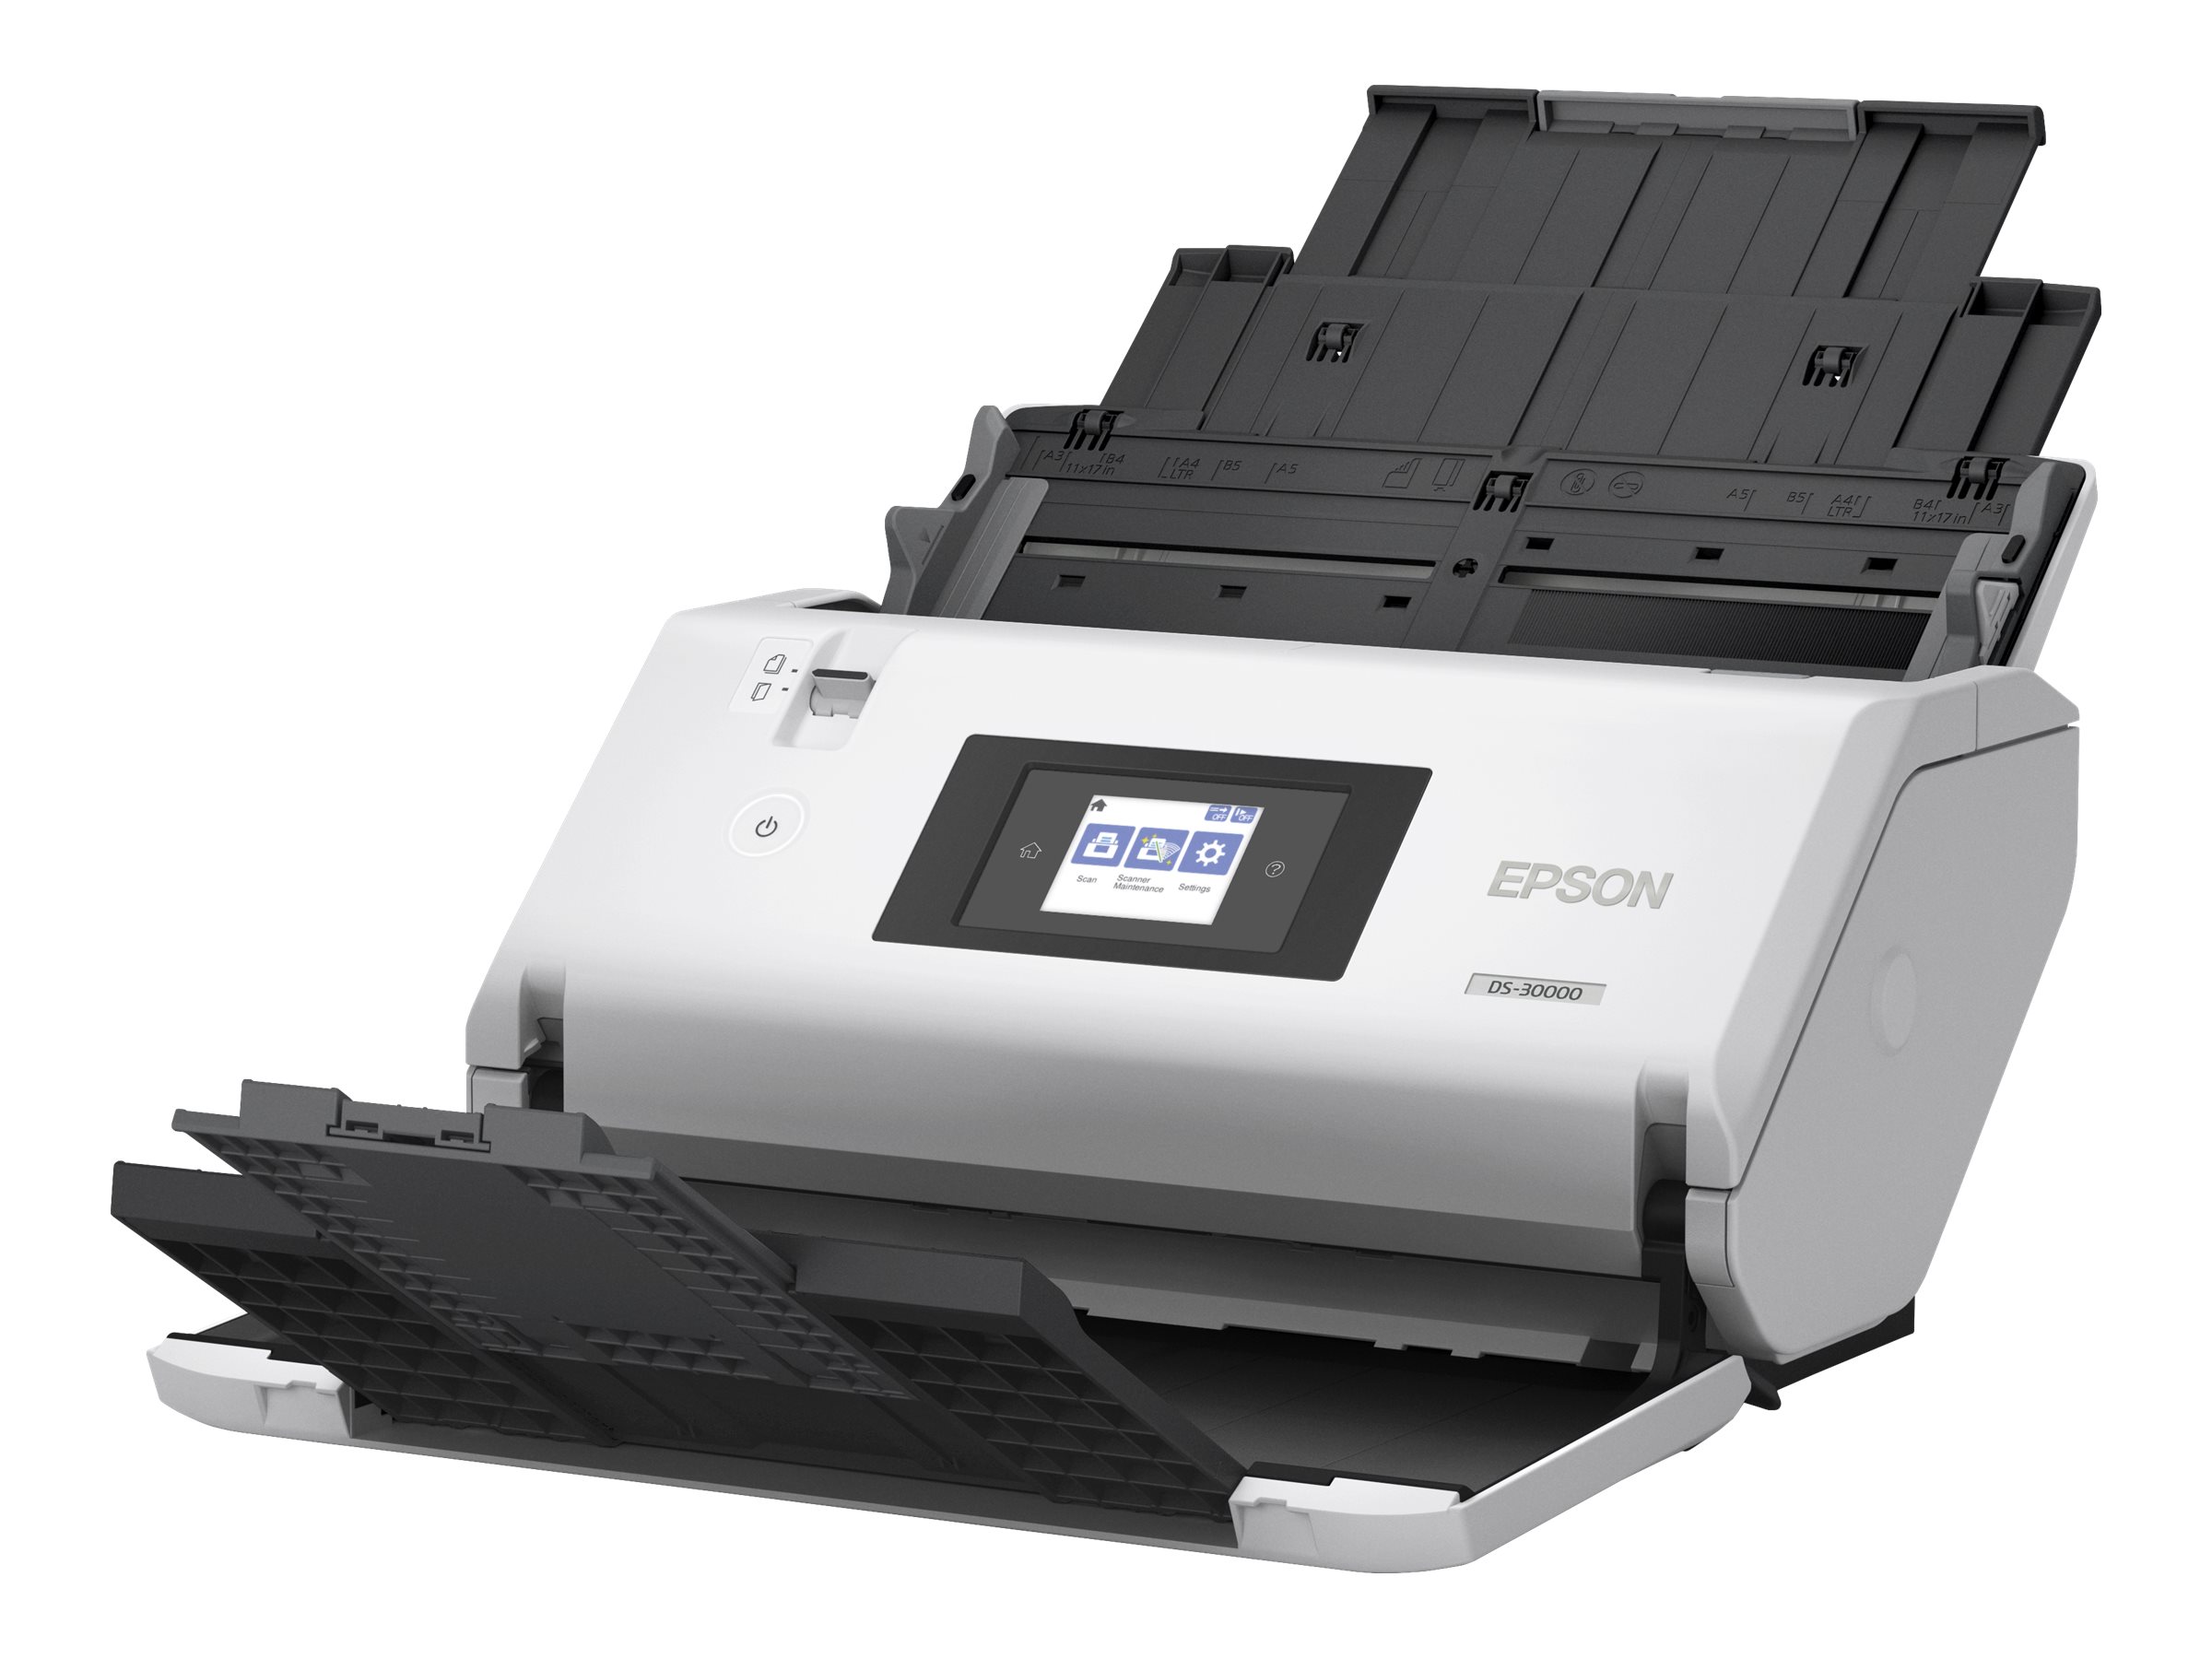 Epson WorkForce DS-30000 - Dokumentenscanner - Contact Image Sensor (CIS) - Duplex - A3 - 600 dpi x 600 dpi - bis zu 70 Seiten/Min. (einfarbig) / bis zu 70 Seiten/Min. (Farbe) - automatischer Dokumenteneinzug (120 Blätter) - bis zu 30000 Scanvorgän...